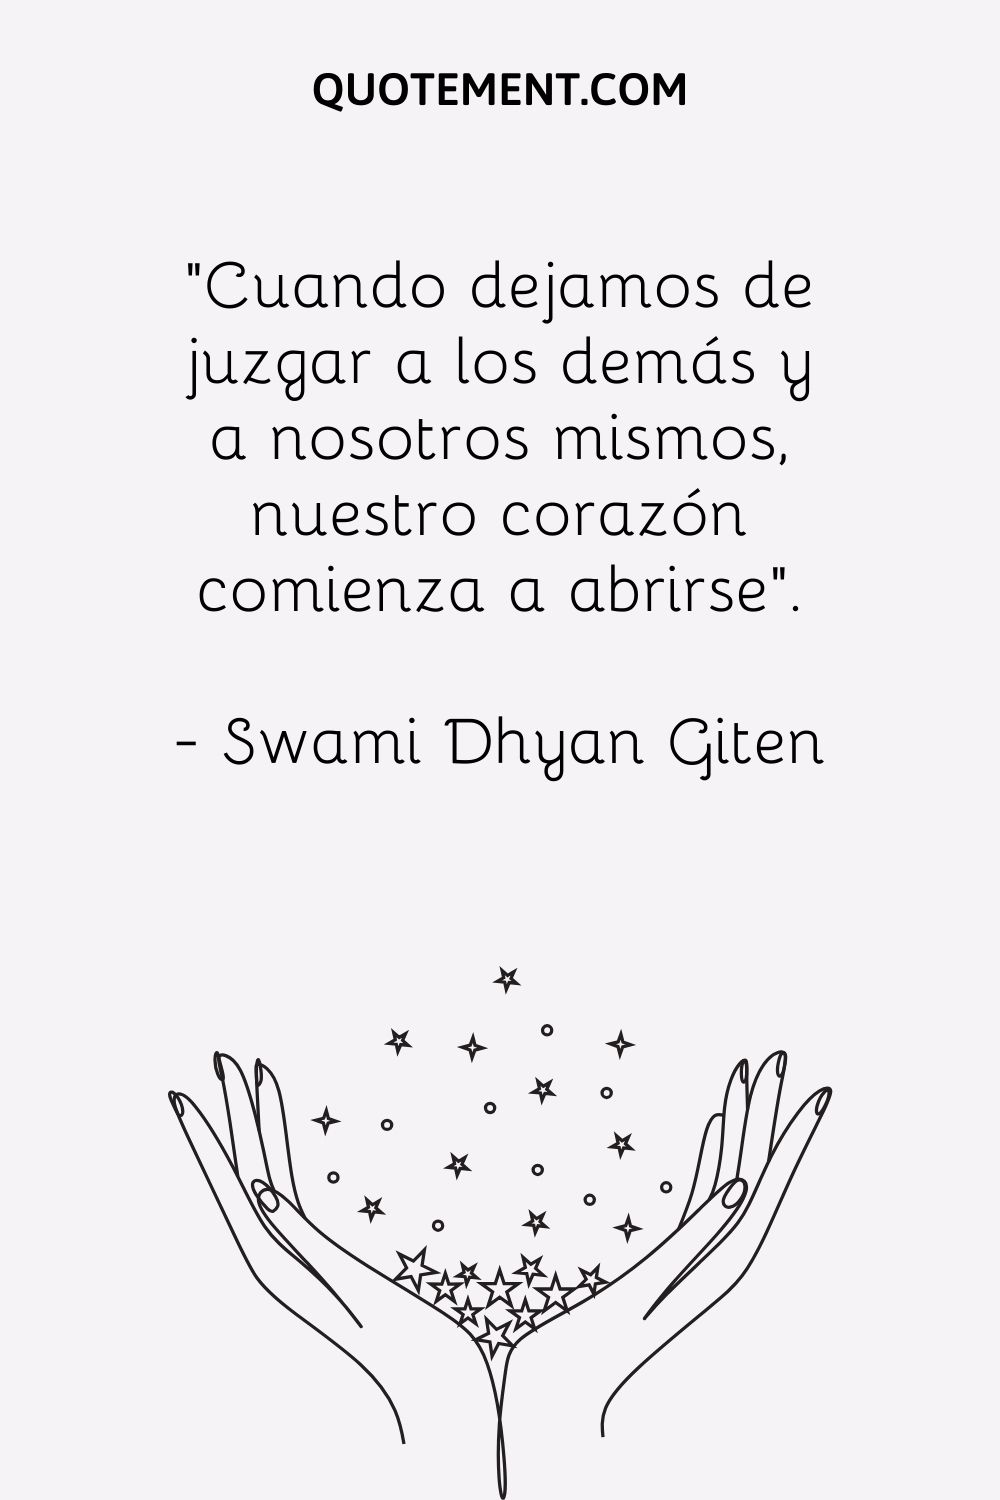 "Cuando dejamos de juzgar a los demás y a nosotros mismos, nuestro corazón comienza a abrirse". - Swami Dhyan Giten